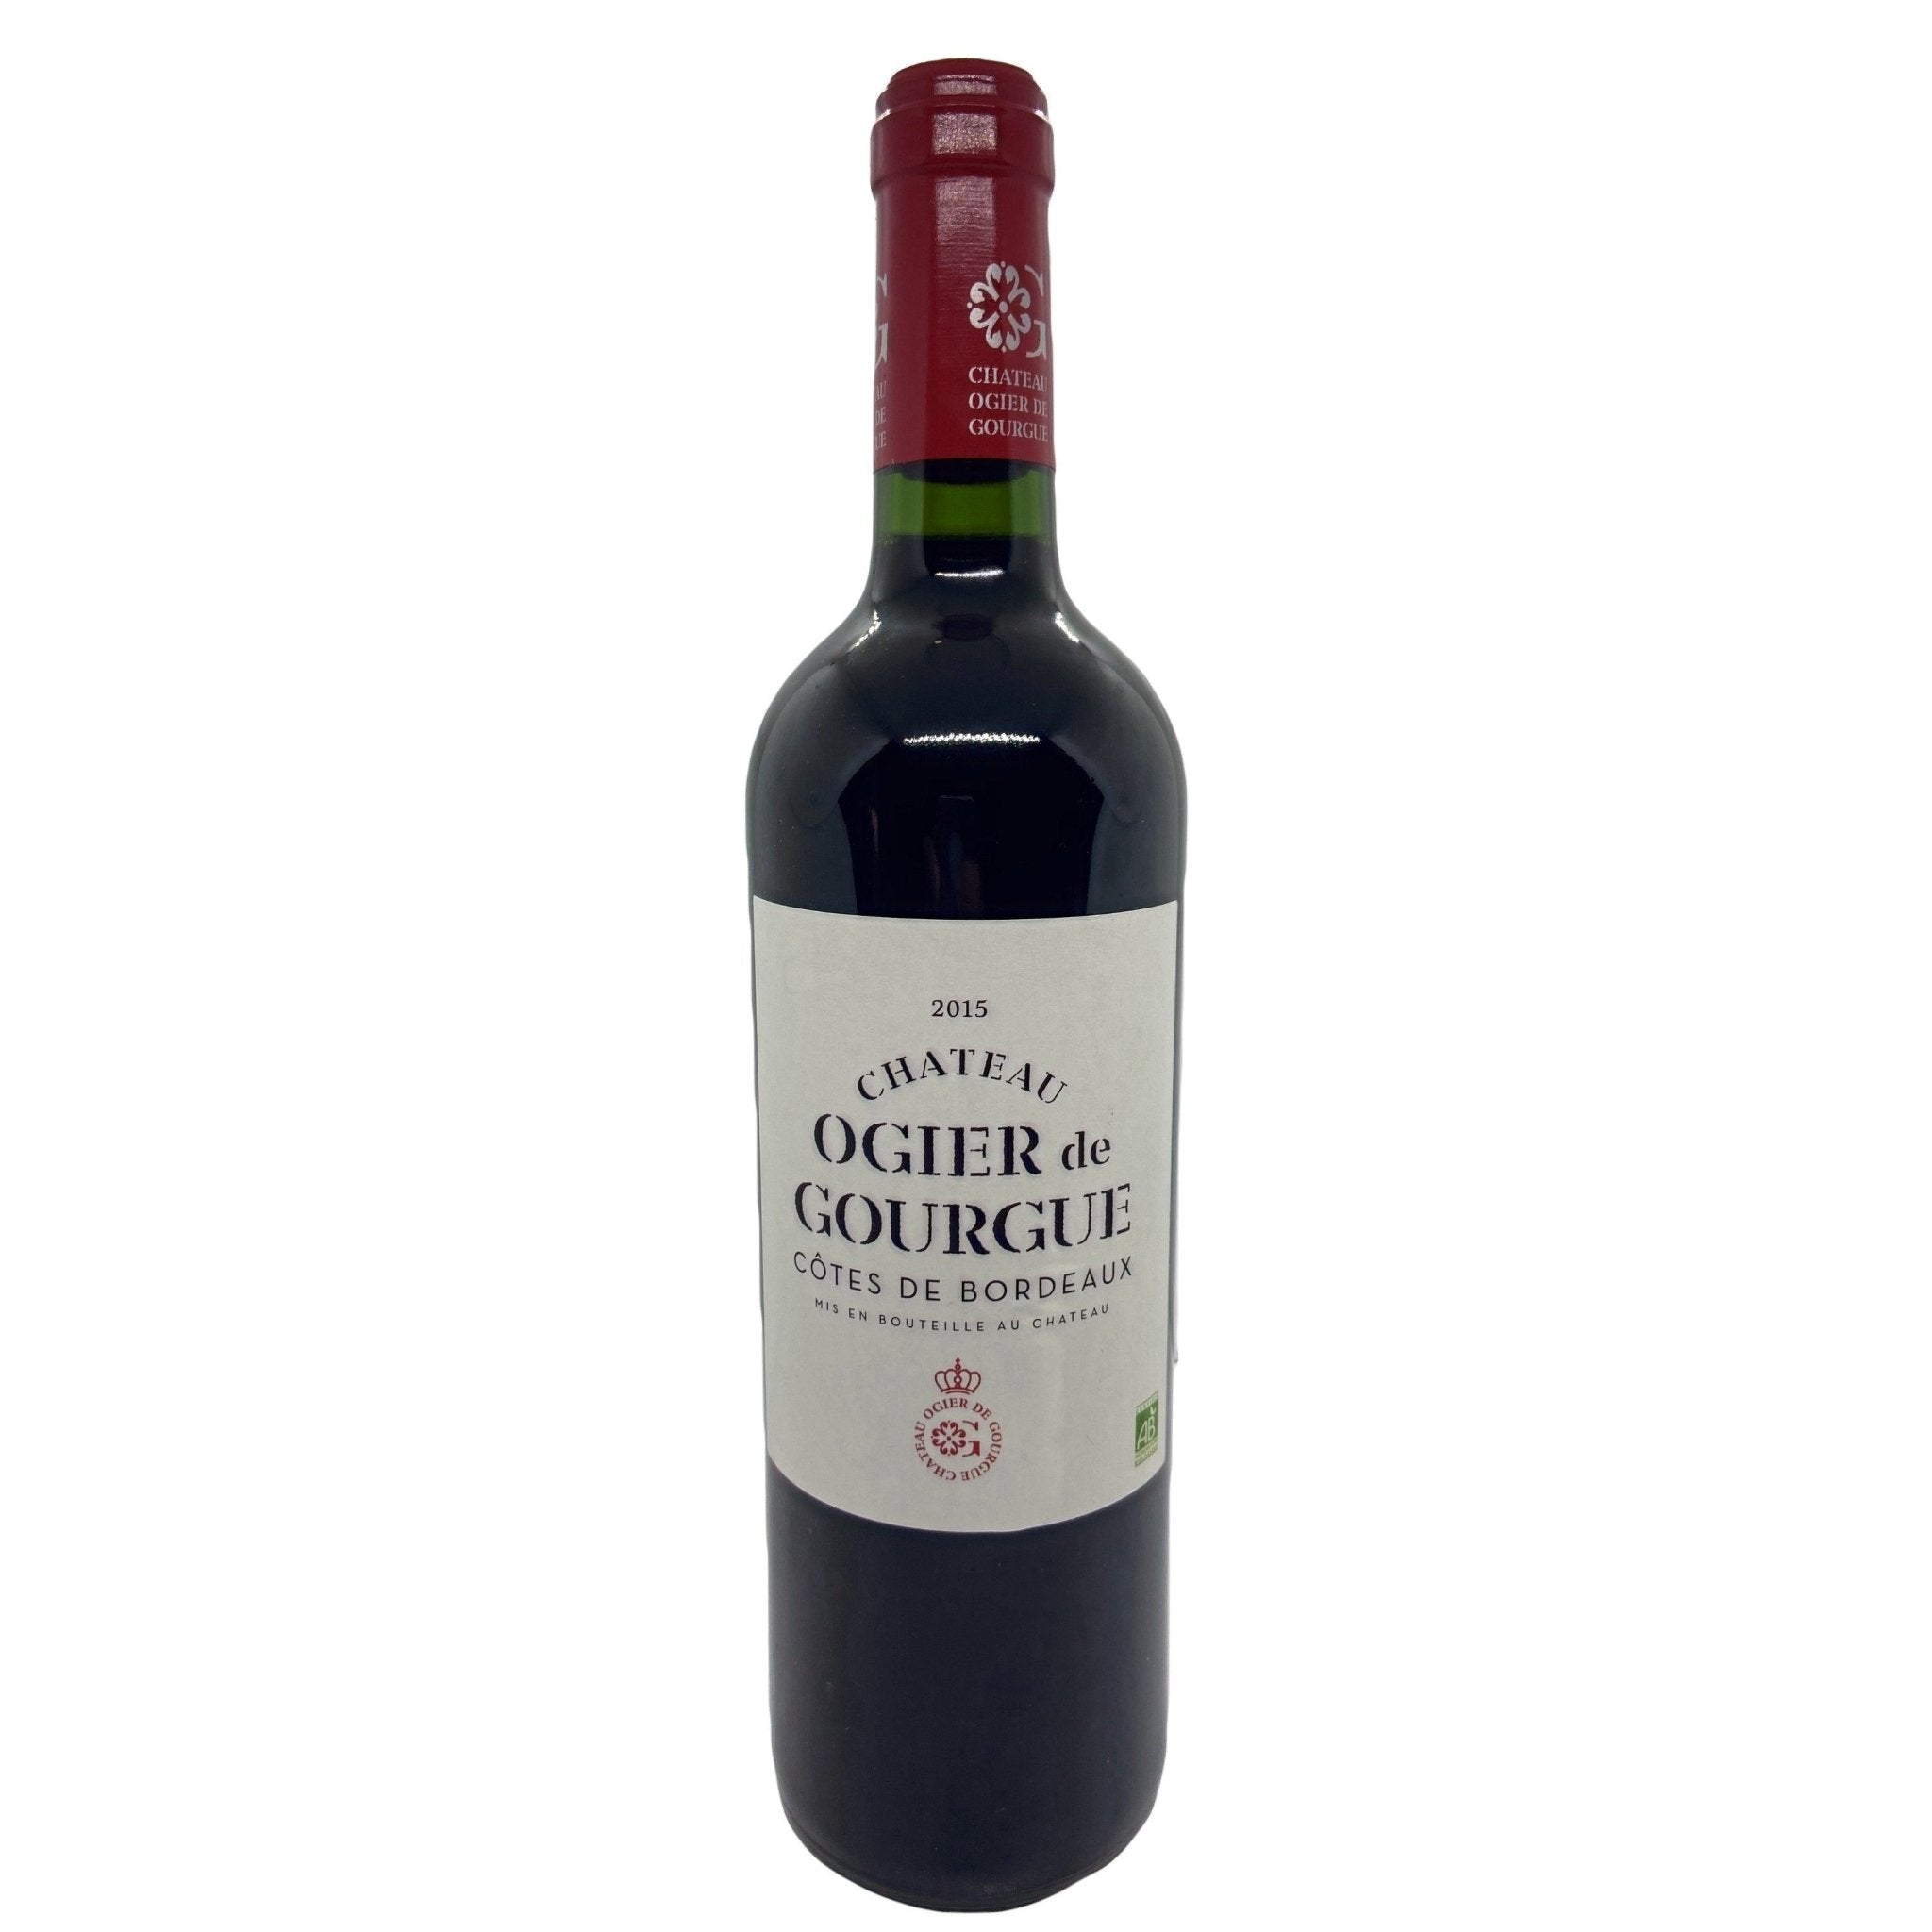 CHATEAU OGIER DE GOURGUE BORDEAUX 2015 ORGANIC - Boutique Wine and Champagne